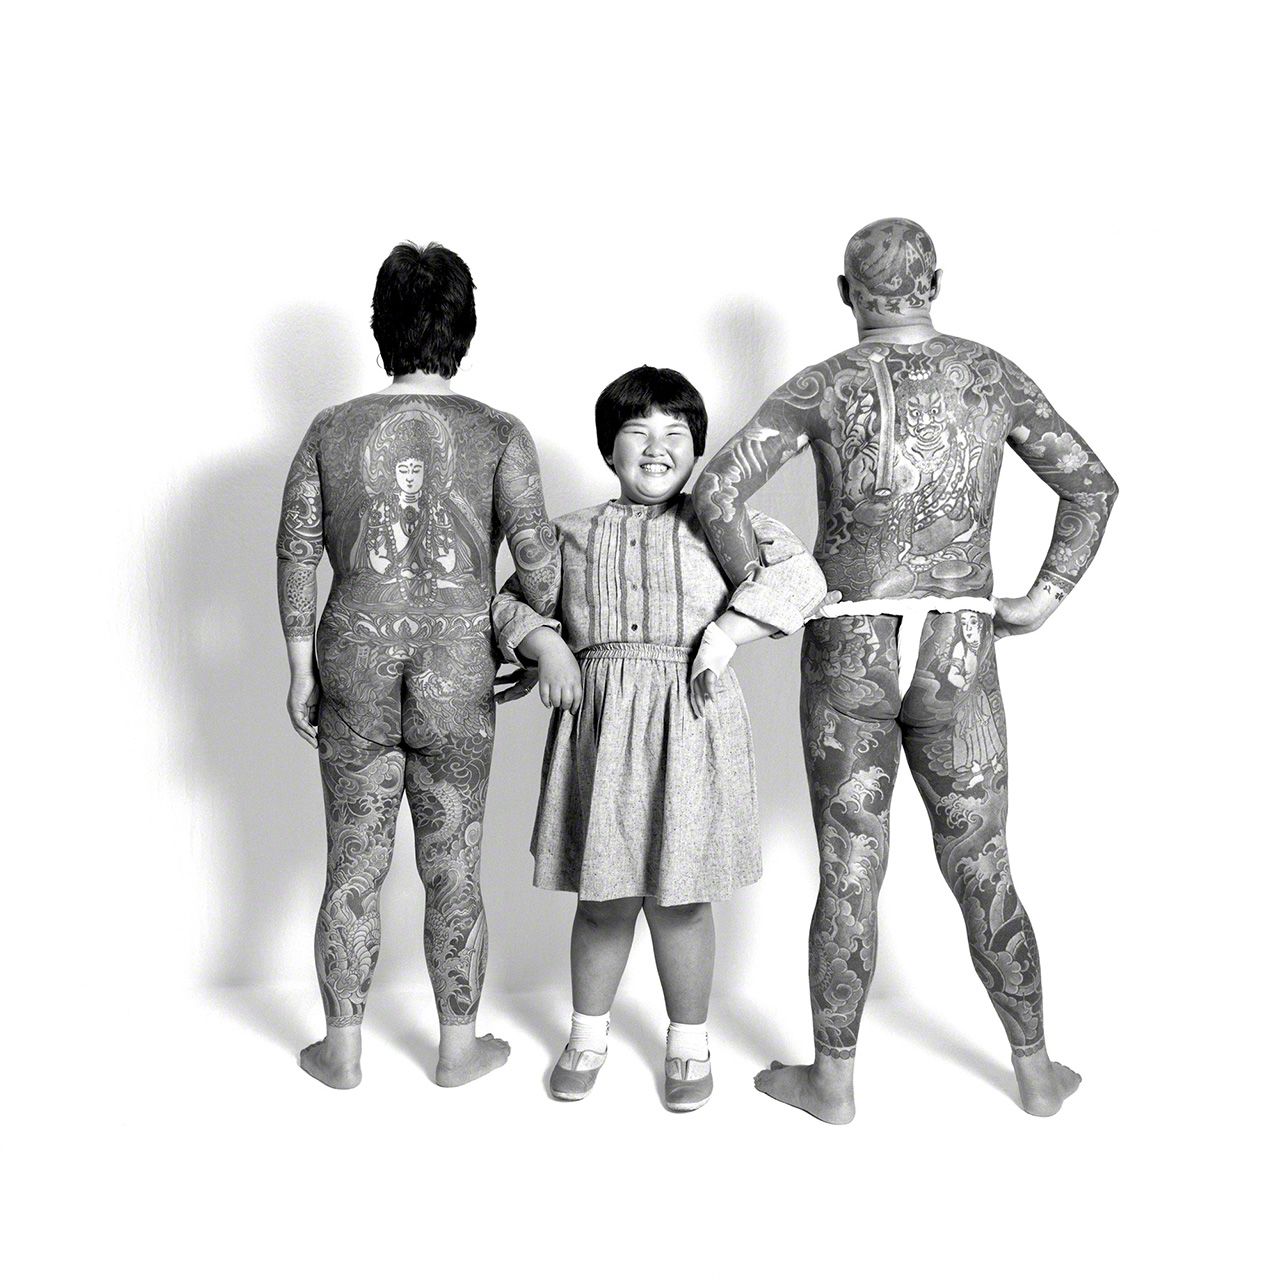 Parents : Ôwada Mituaki, tatoueur, et Akie, femme au foyer. Enfant : Ôwada Keiko, élève à l’école primaire.